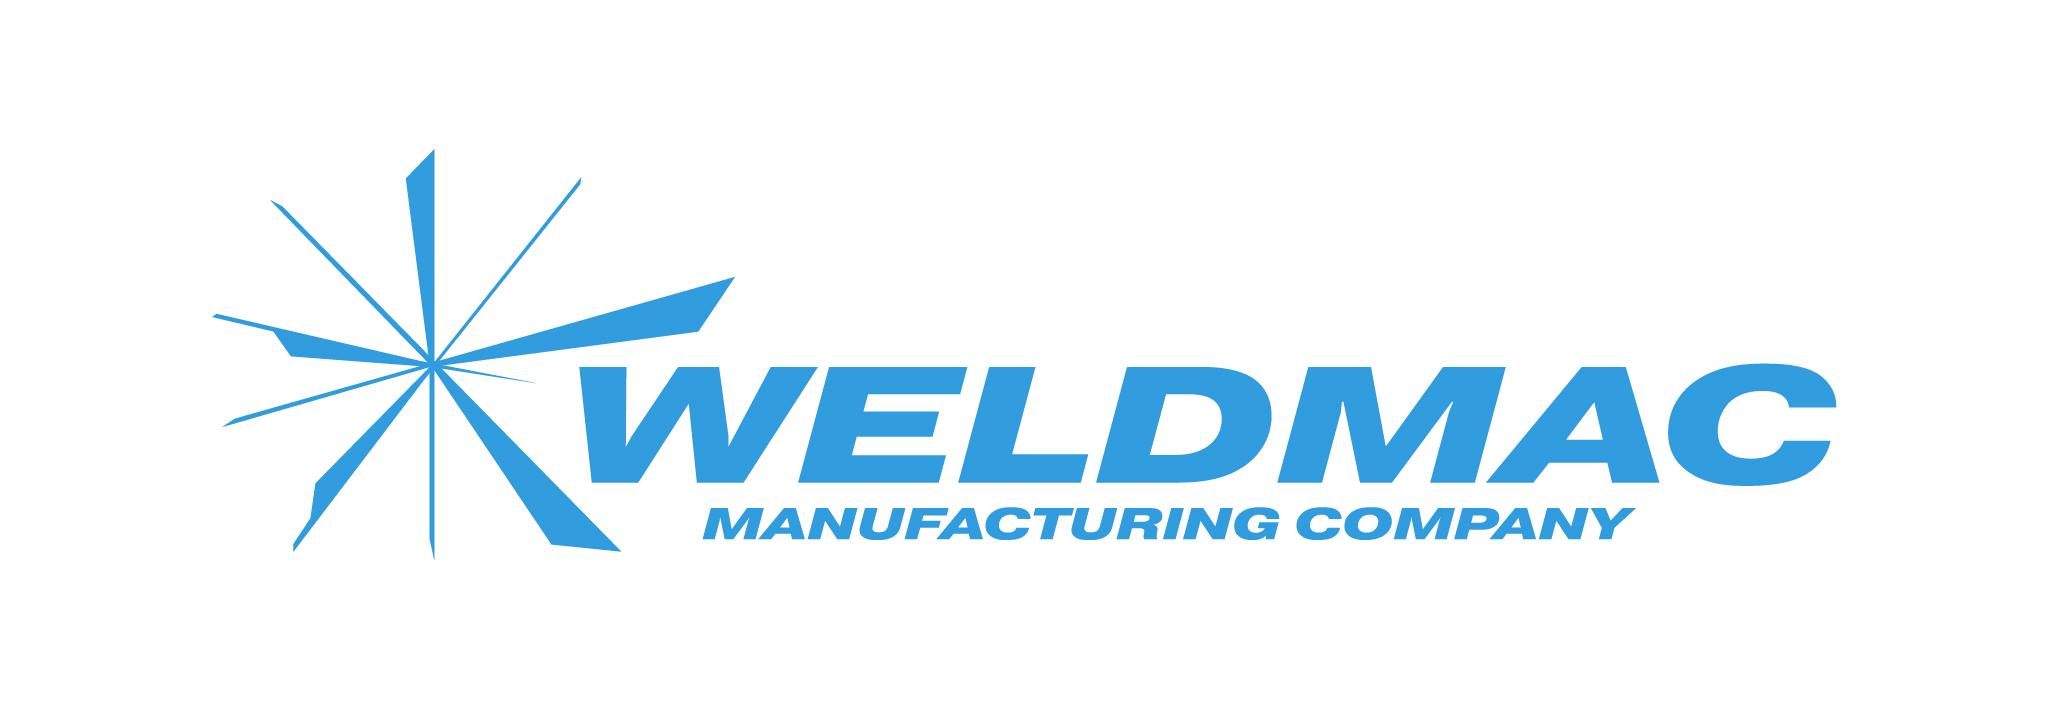 TRM Weldmac Logo Blue